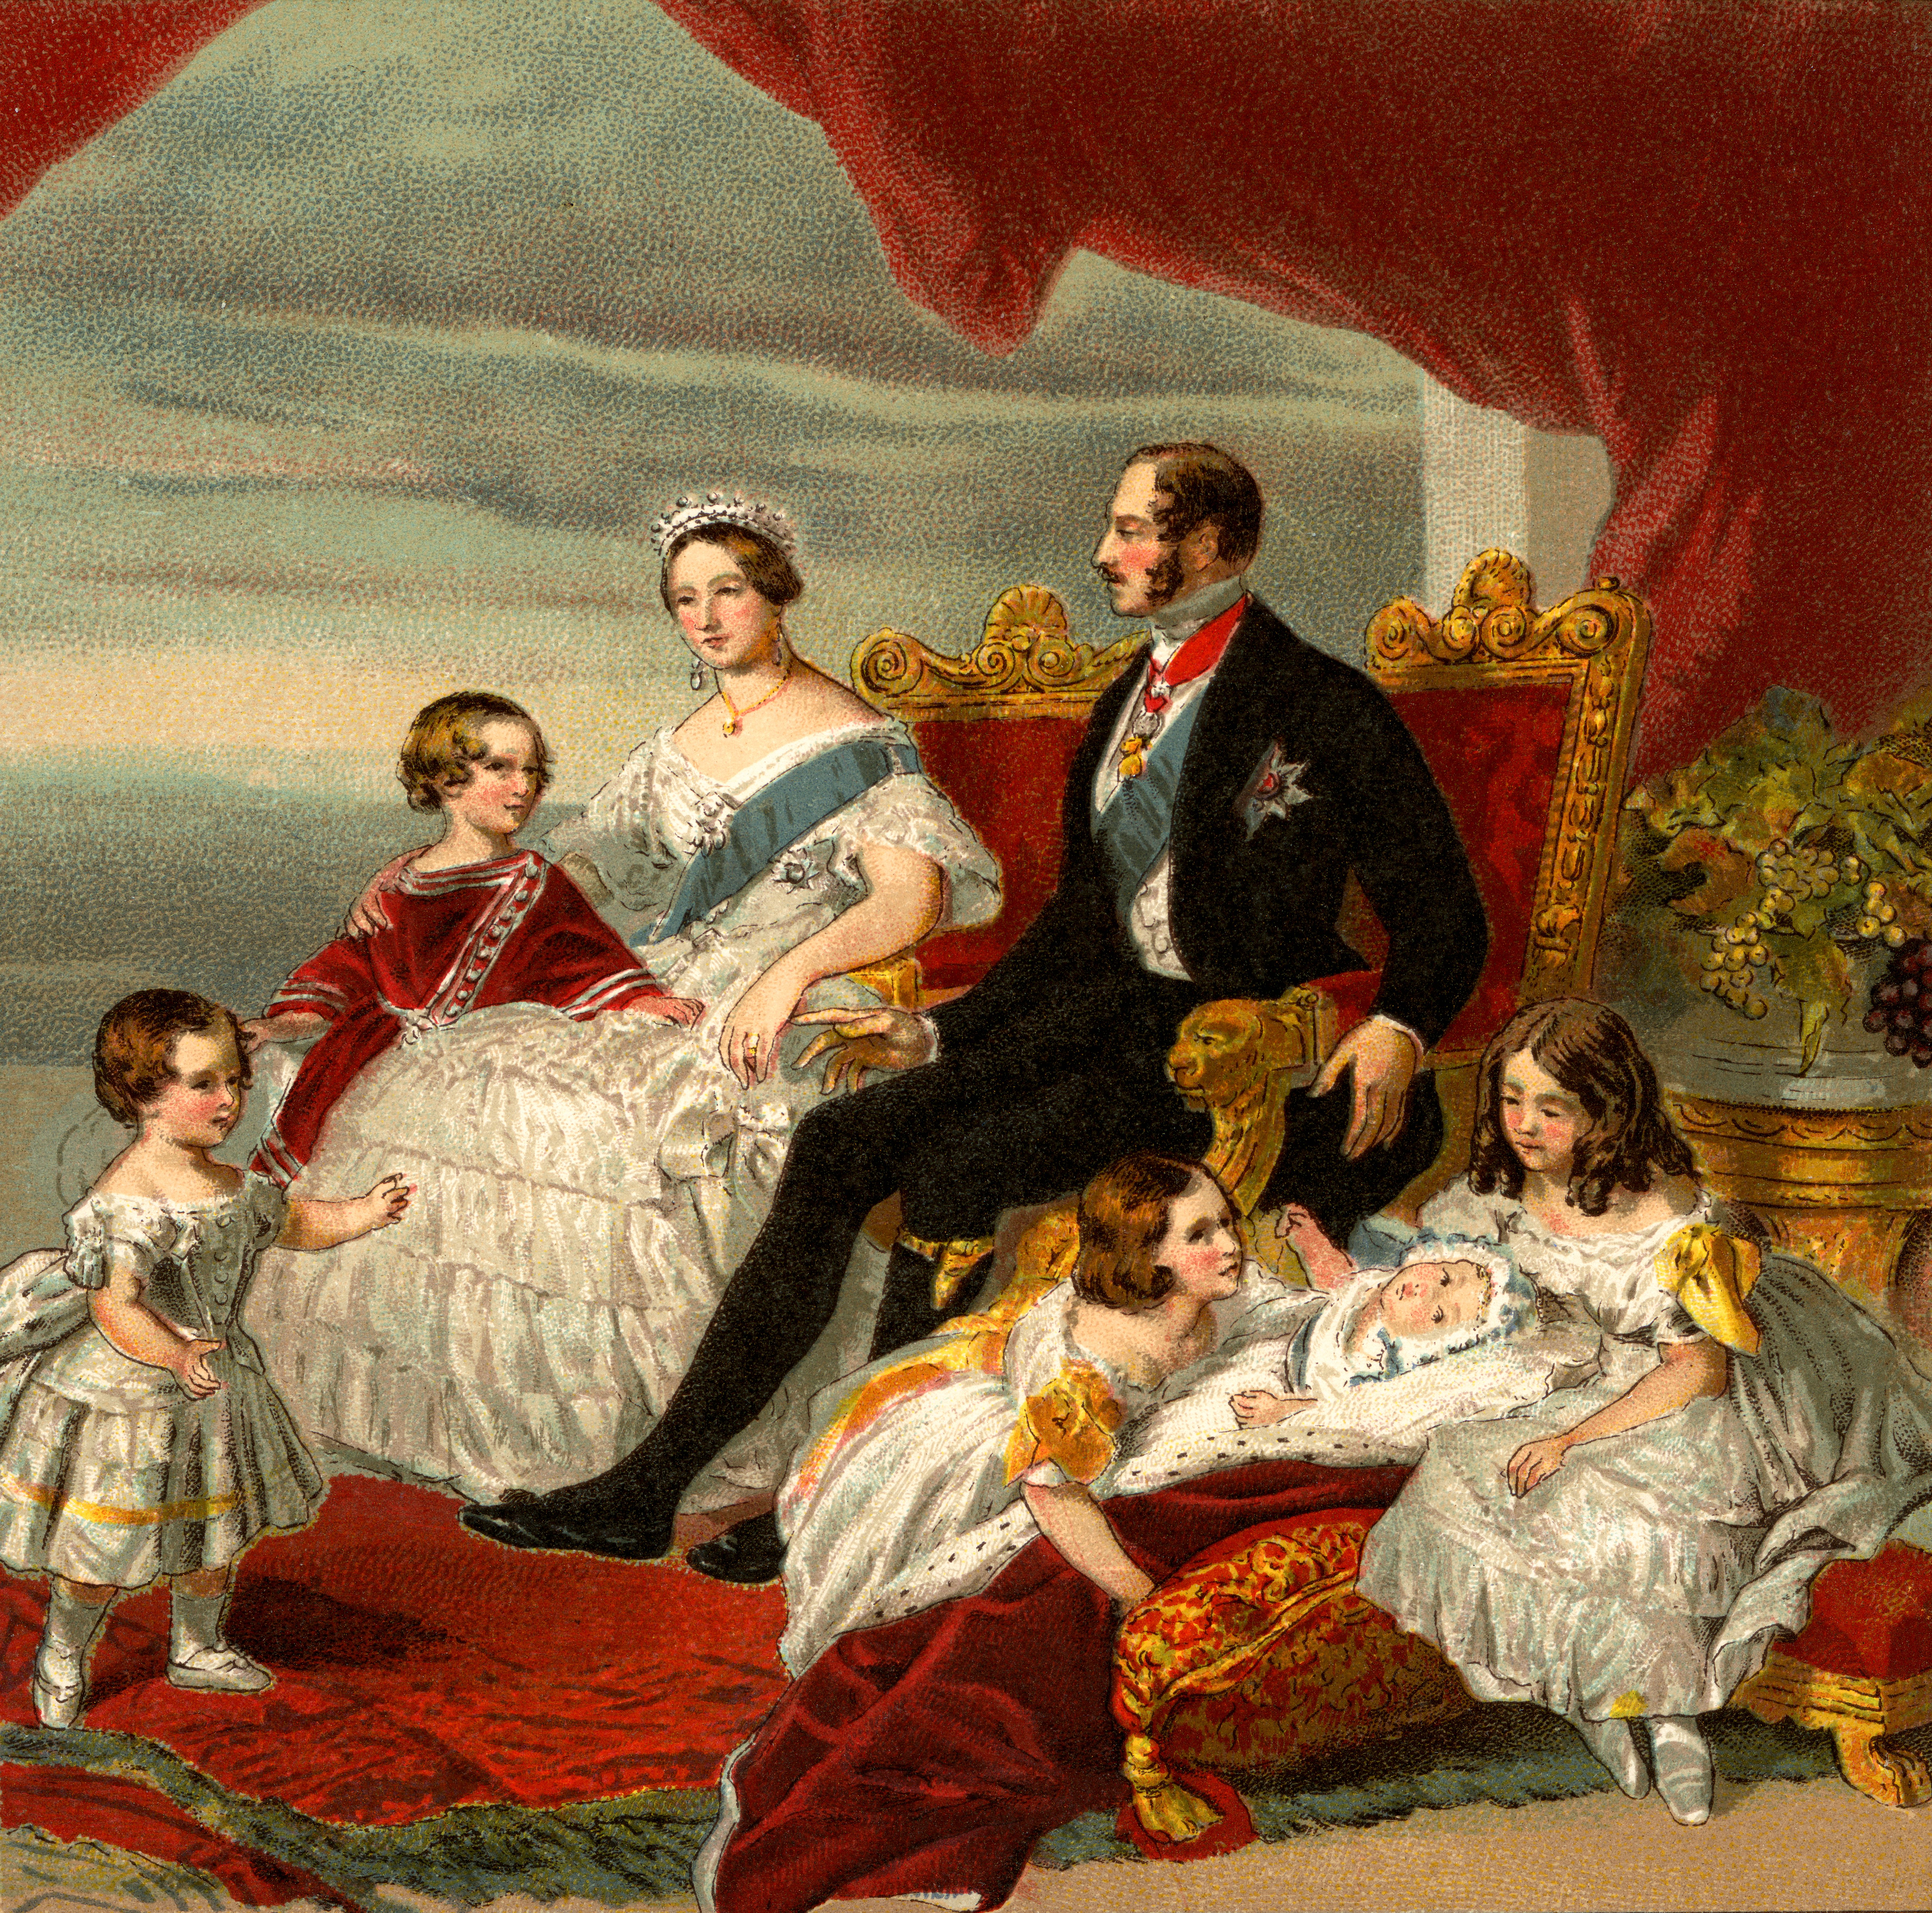 Королева Виктория и принц Альберт прожили вместе более 20 лет - их история любви